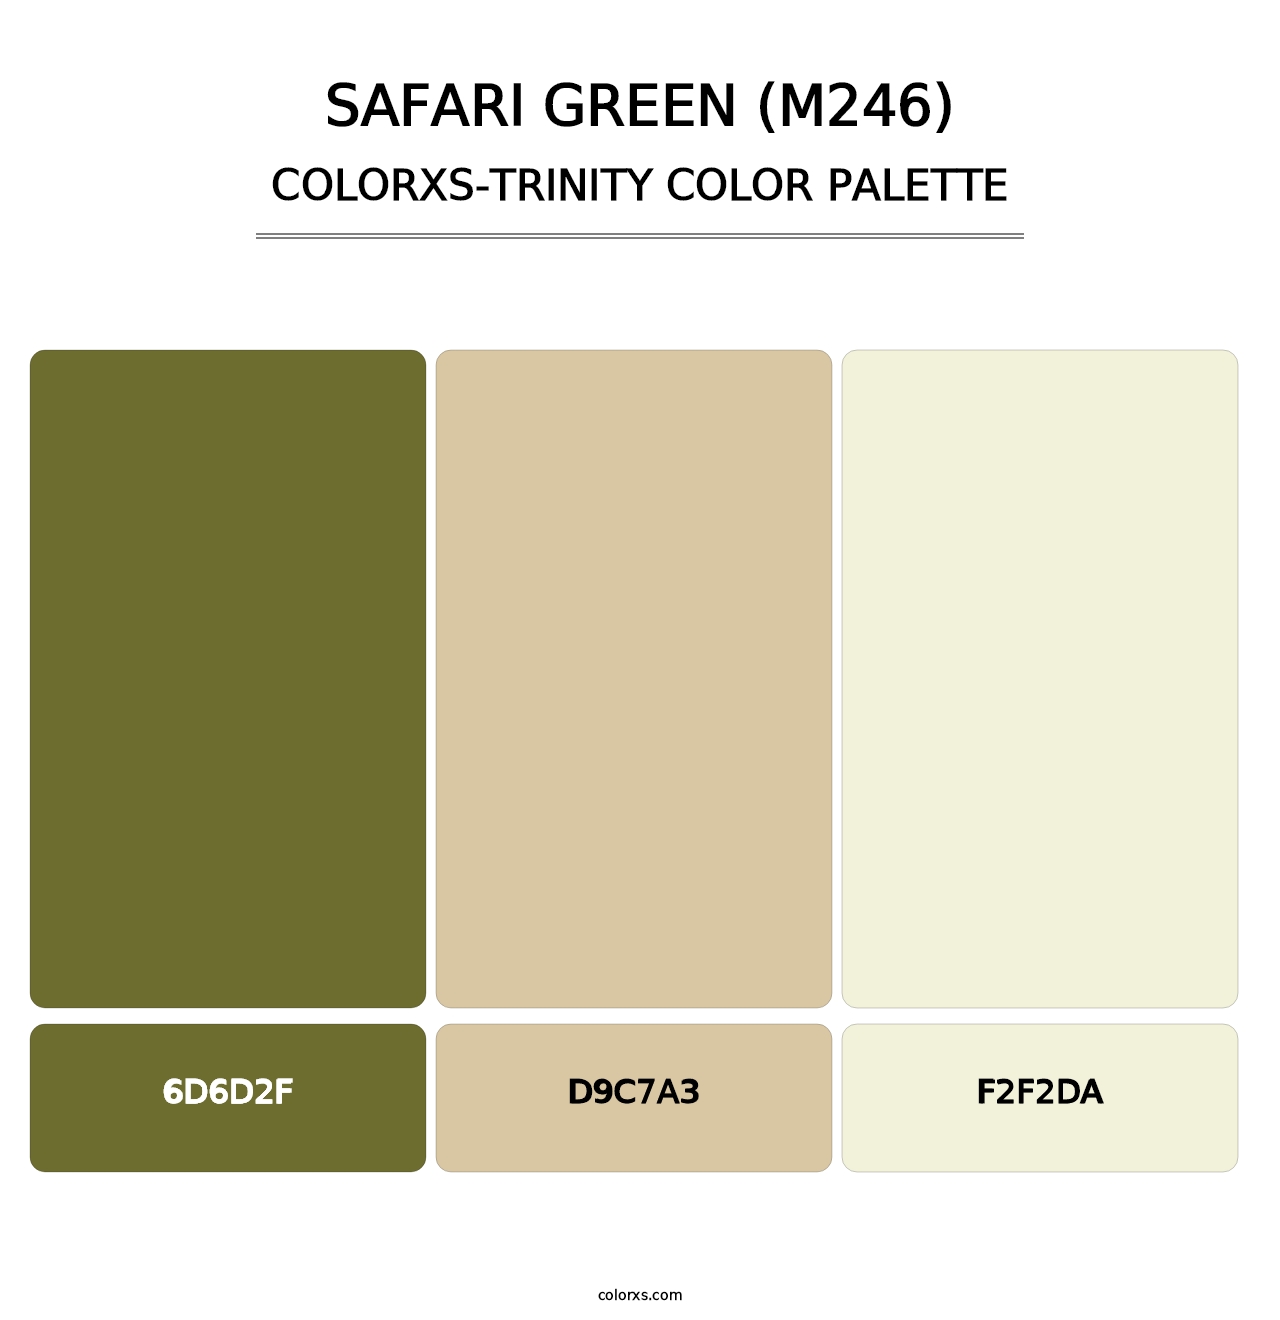 Safari Green (M246) - Colorxs Trinity Palette